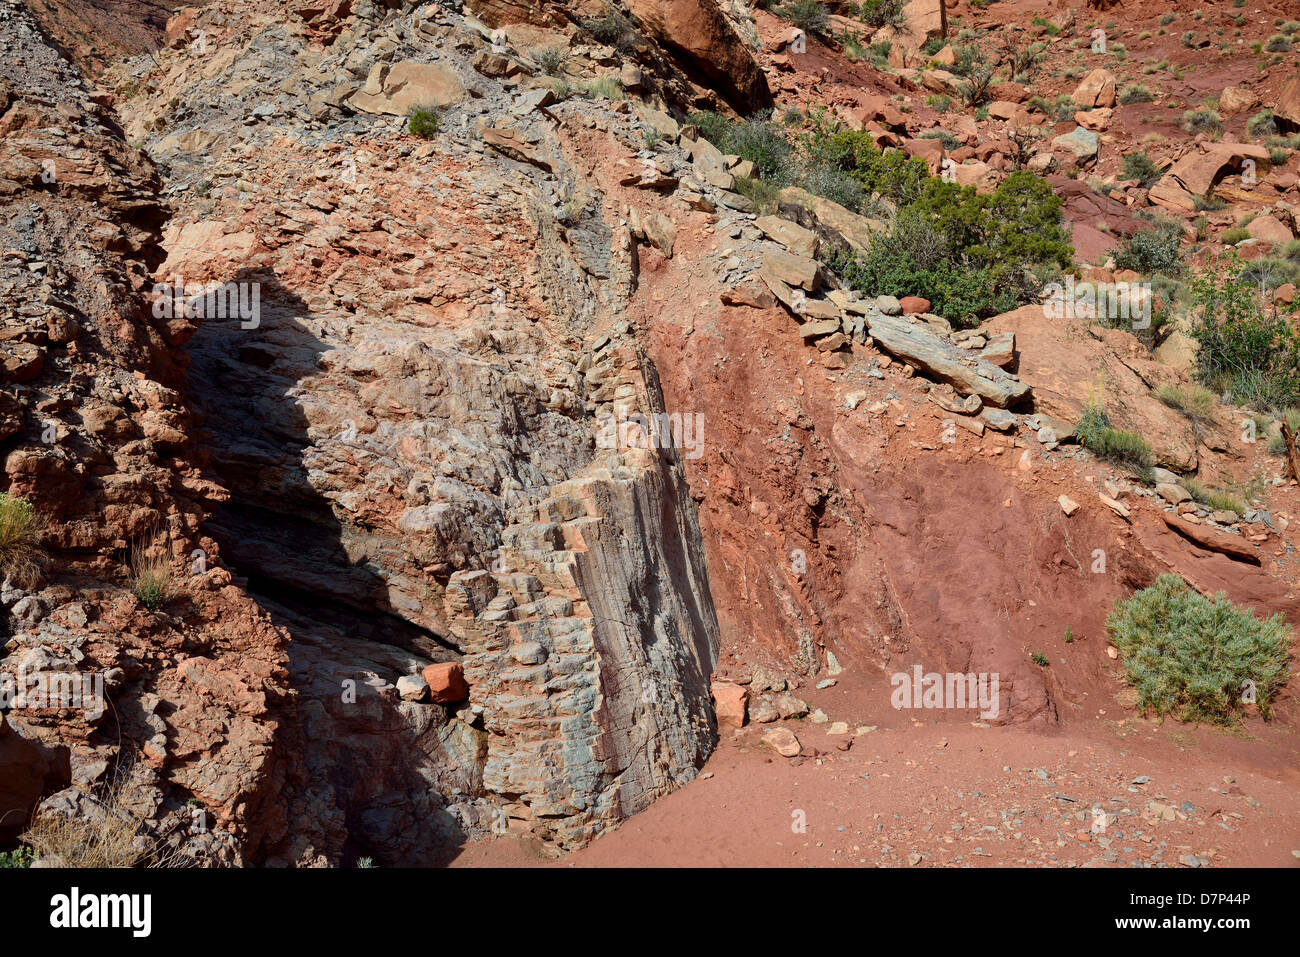 Una anomalia normale compensato in pietra arenaria bianca dal rosso scisto. Parco Nazionale di Arches, Moab, Utah, Stati Uniti d'America. Foto Stock